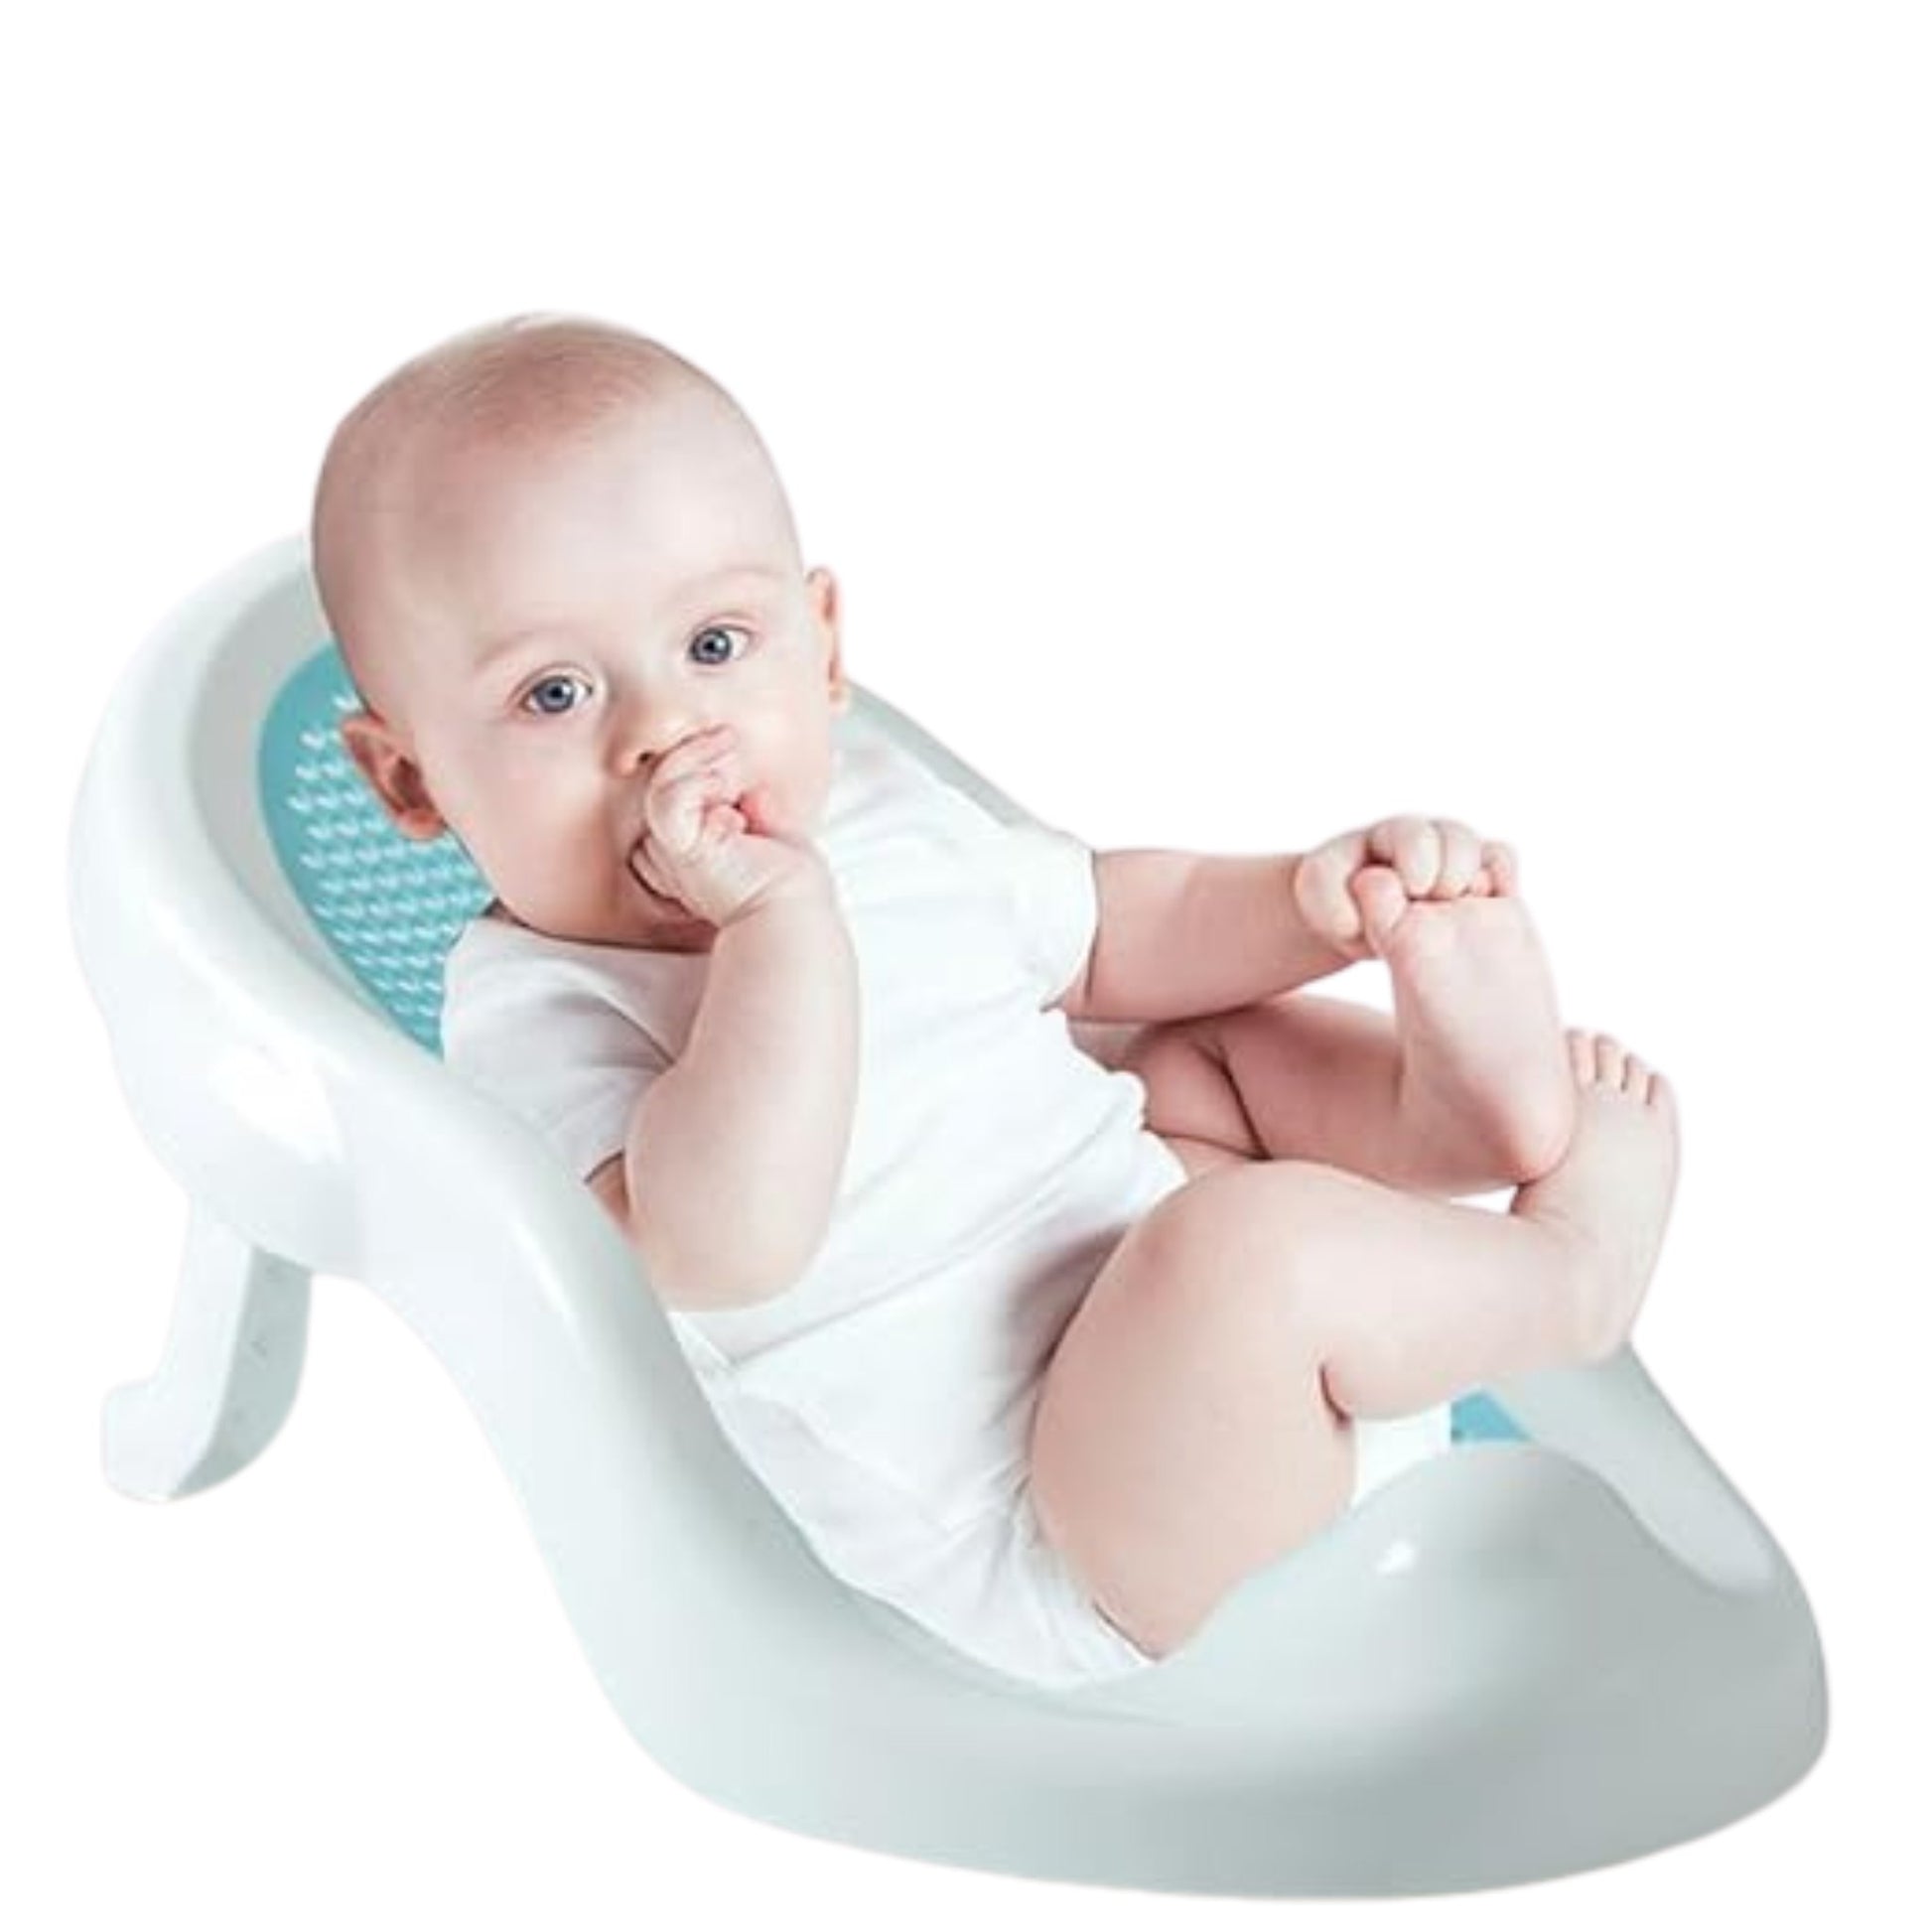 Baby Bath Reclining Chair - Cute Cubs